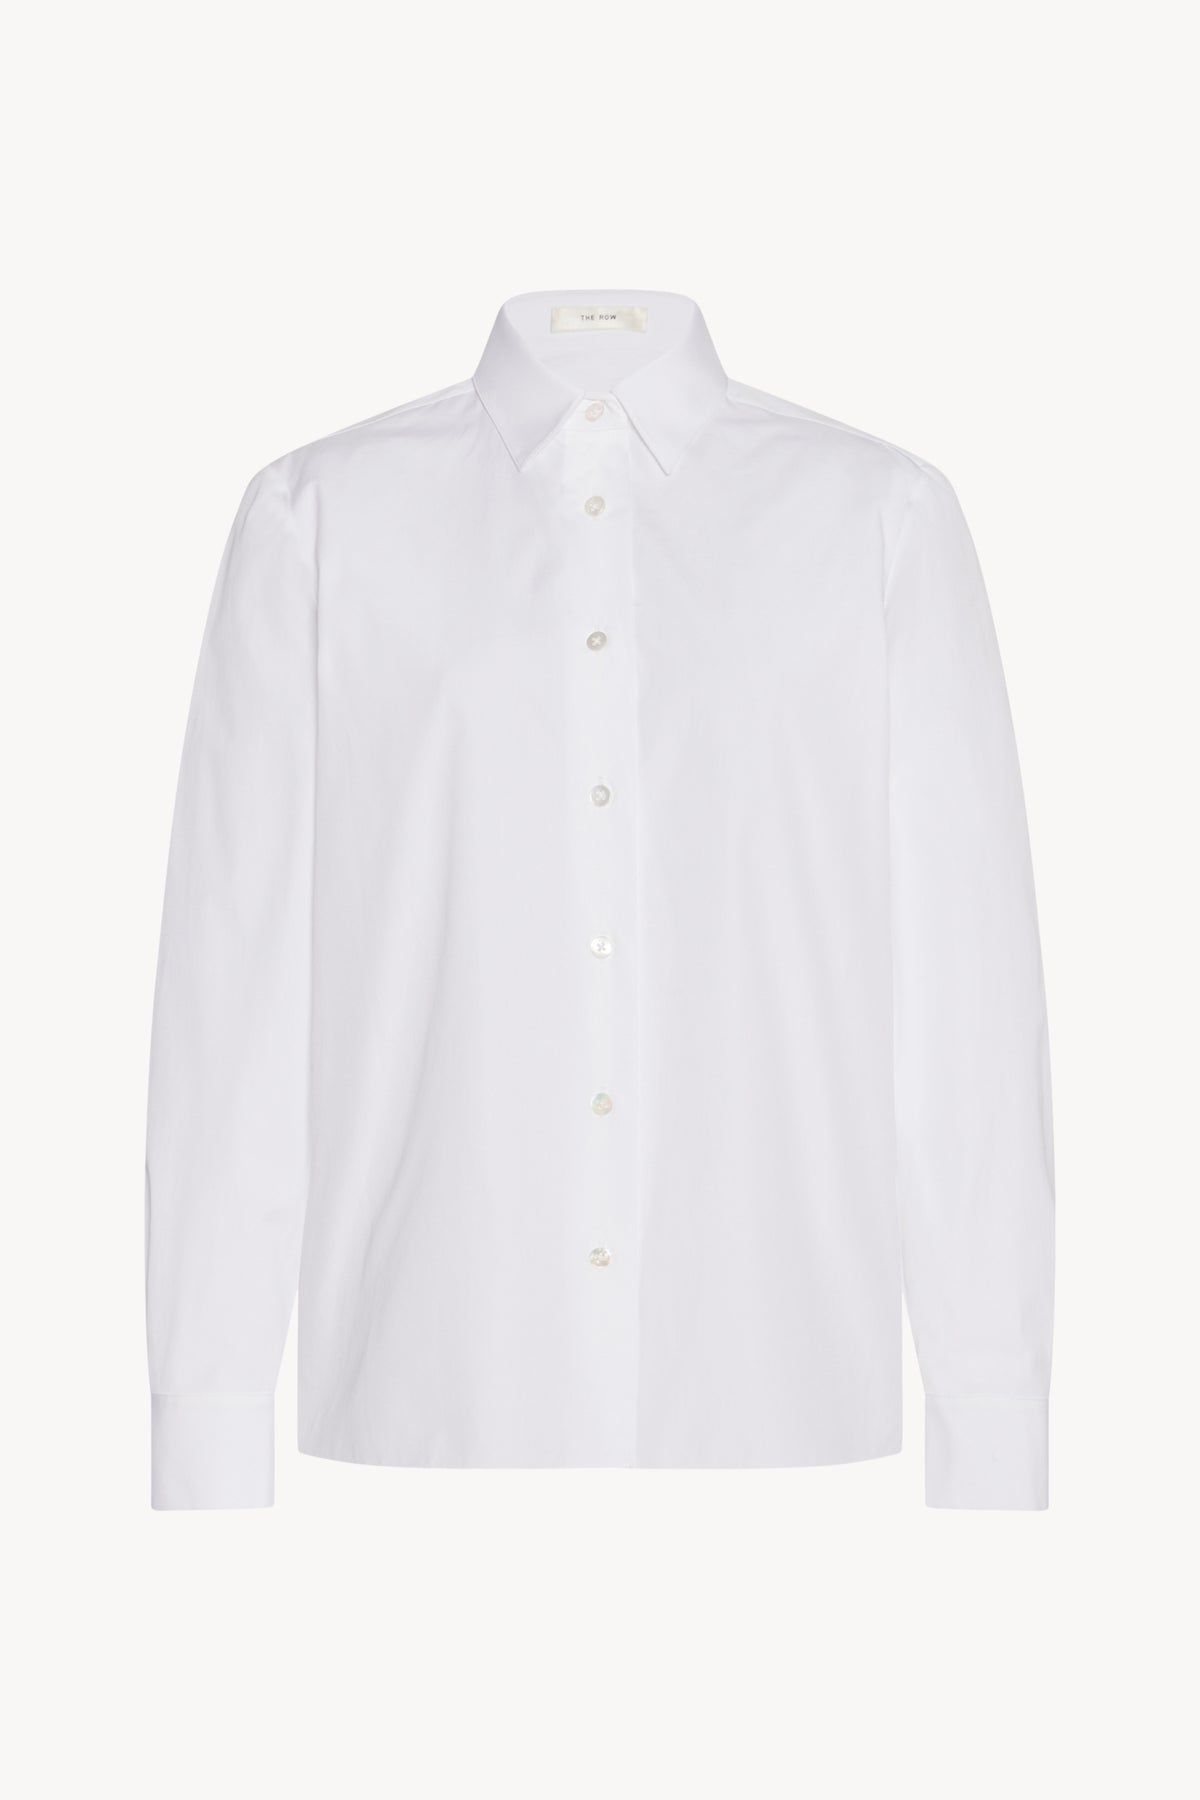 the-row-sadie-shirt-white-cotton-amarees